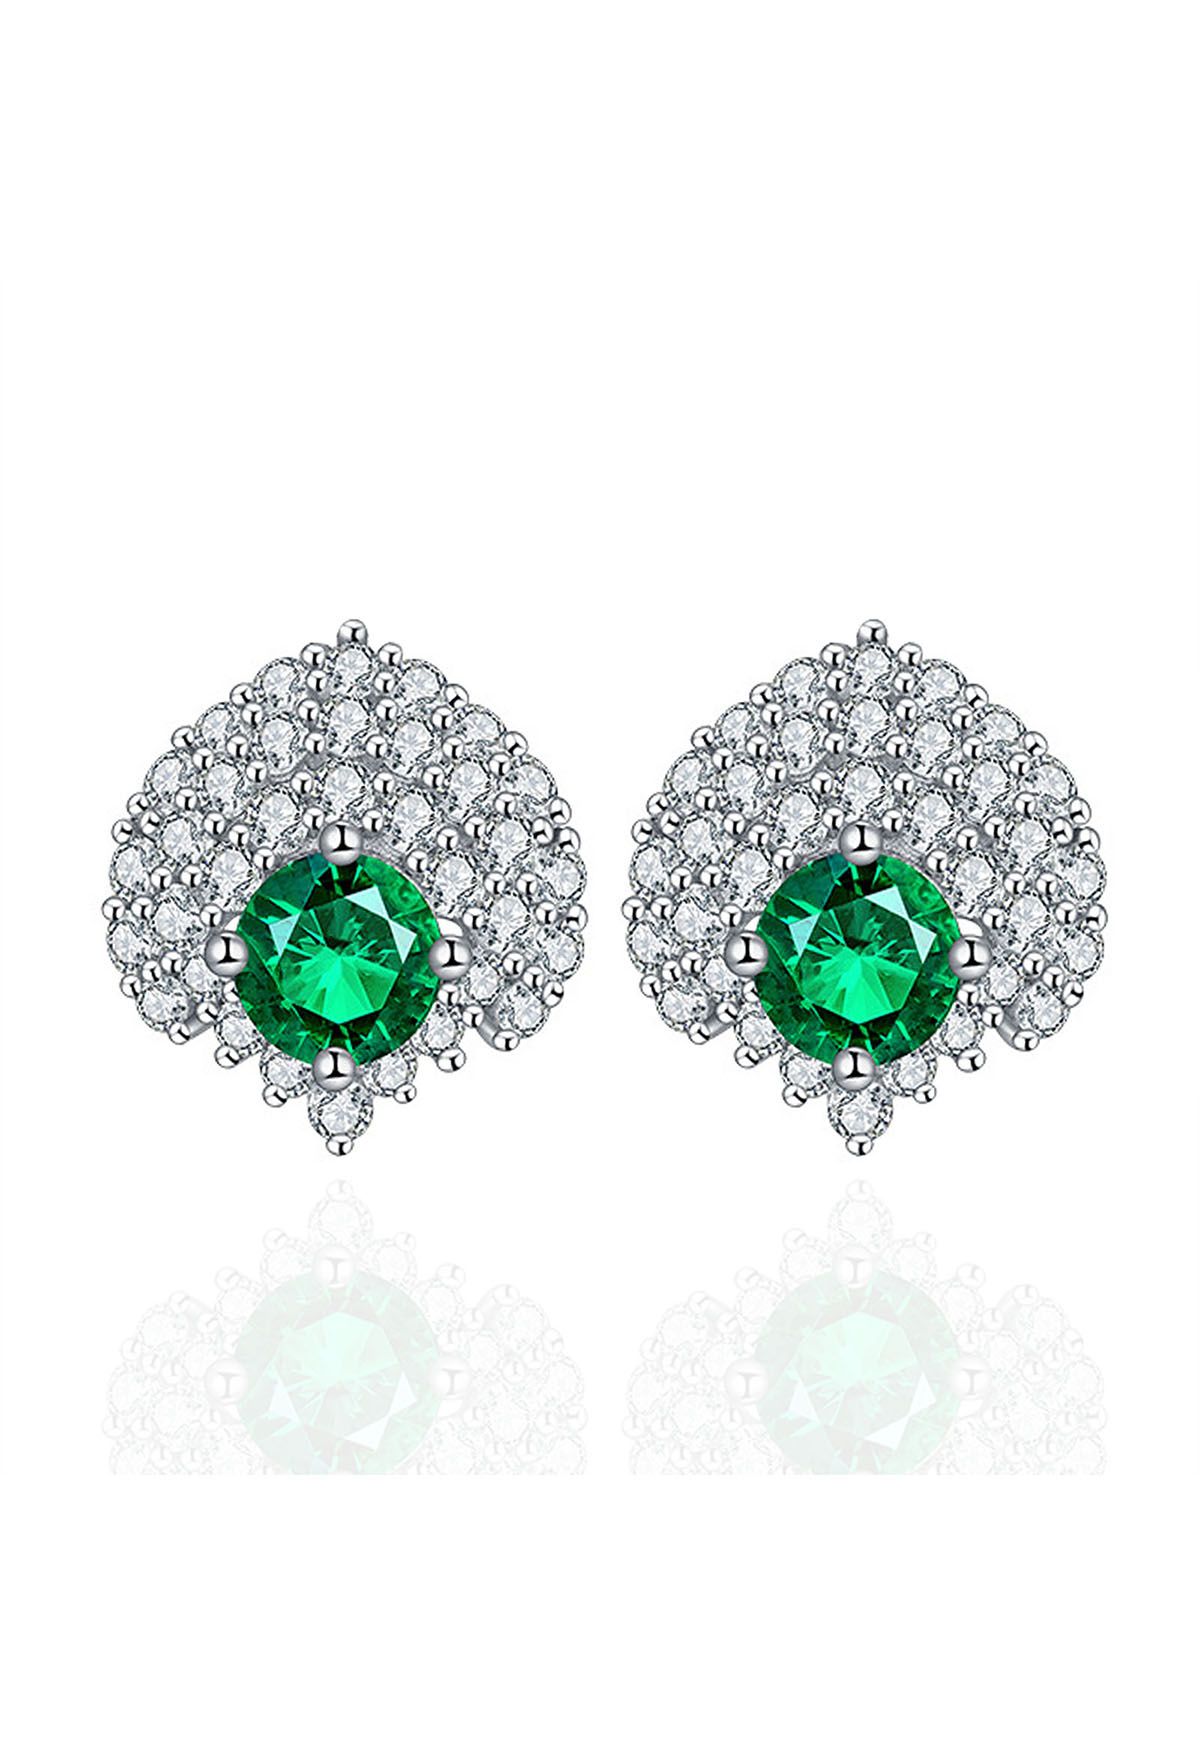 Brincos de esmeralda com decoração de diamantes